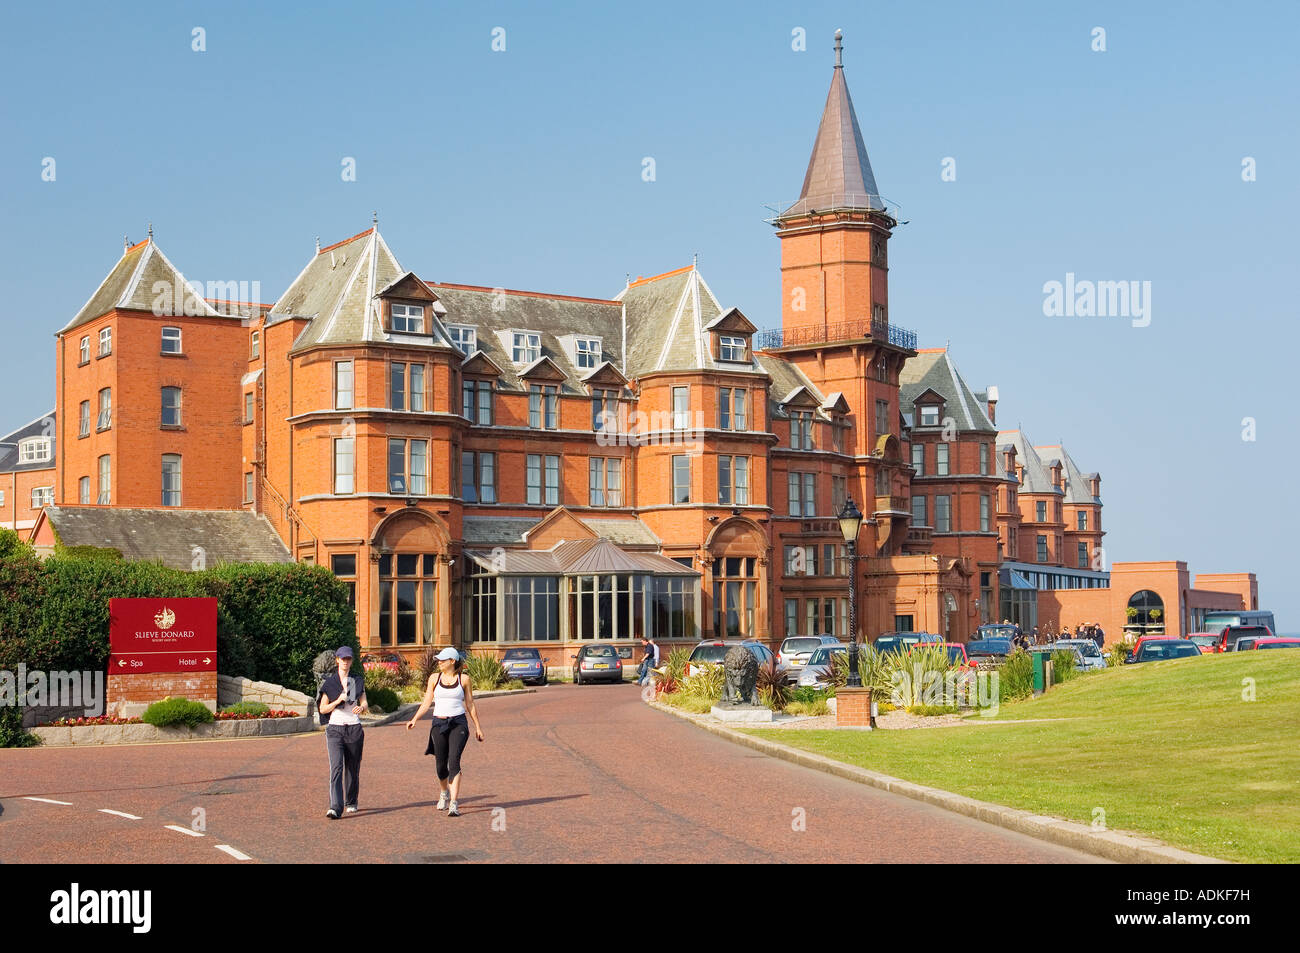 La période Victorienne Slieve Donard Hotel, Newcastle, à côté du parcours de golf Royal County Down, Irlande. Banque D'Images